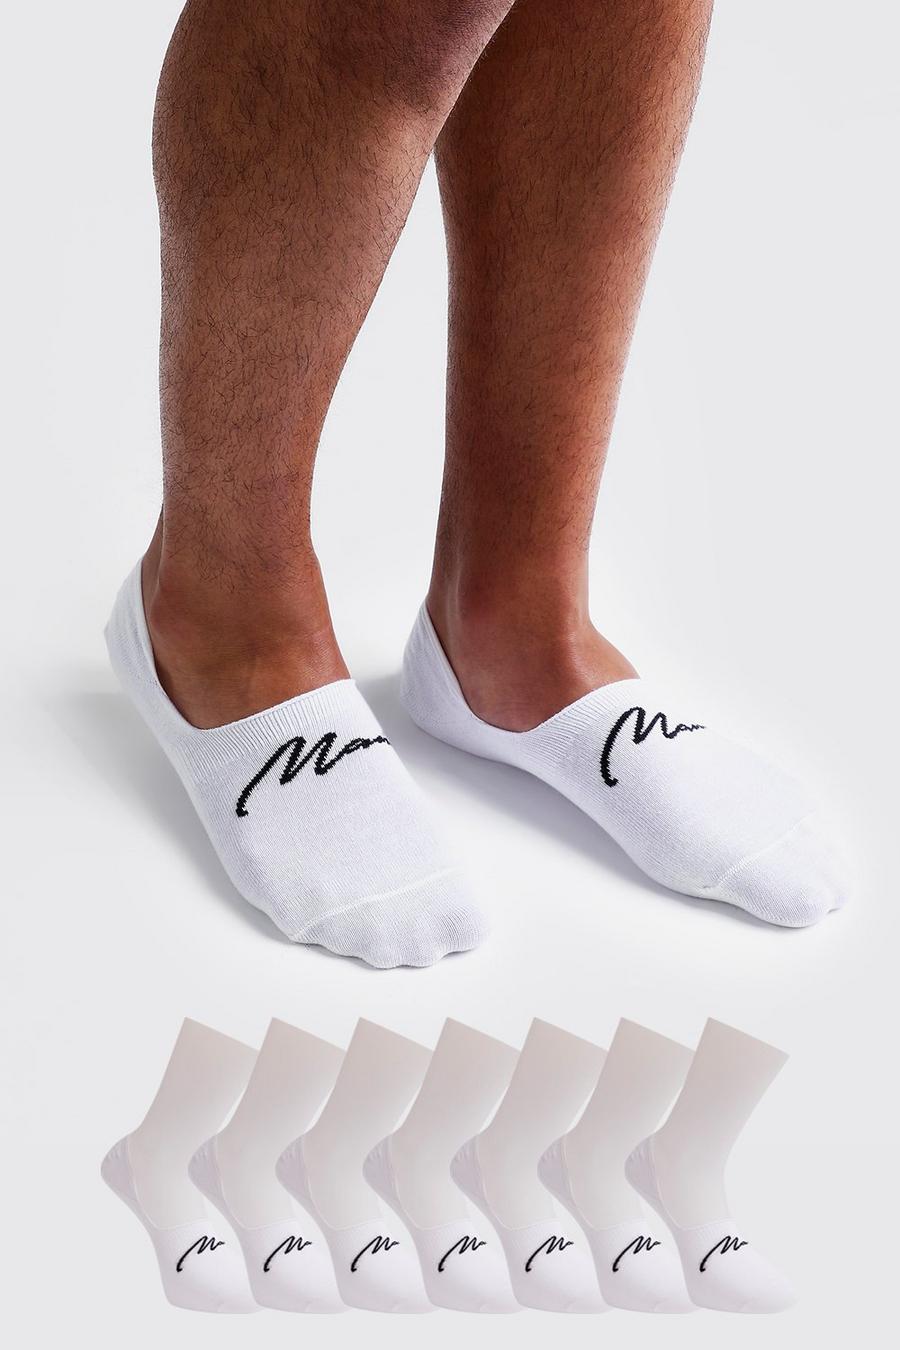 7er-Pack unsichtbare Man Signature Socken, Weiß white